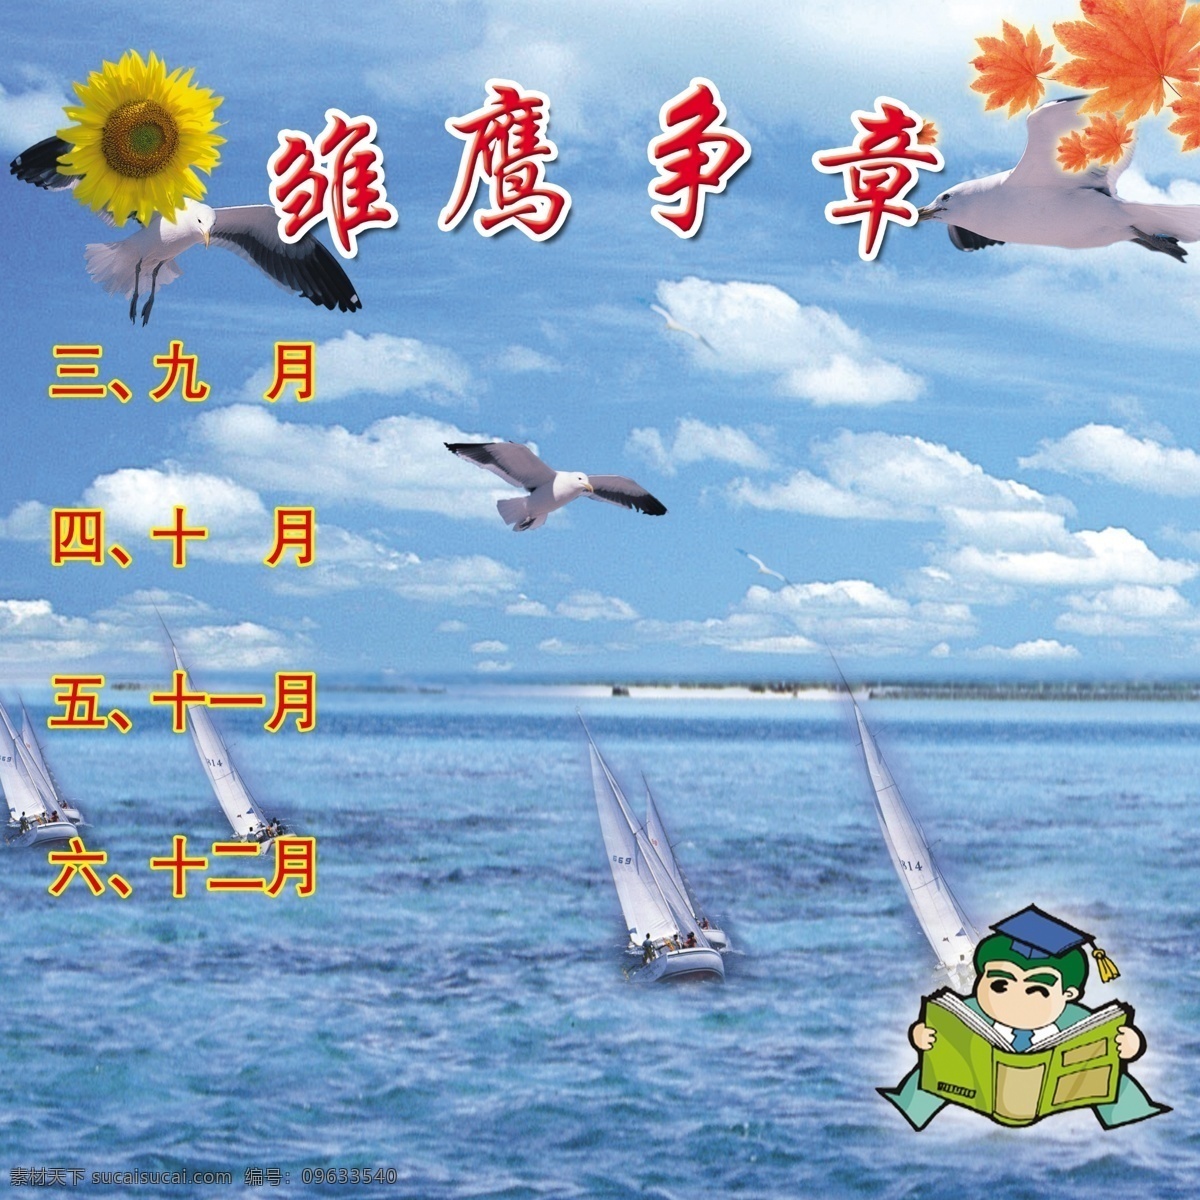 雏鹰争章 海洋 卡通 向日葵 枫叶 青色 天蓝色